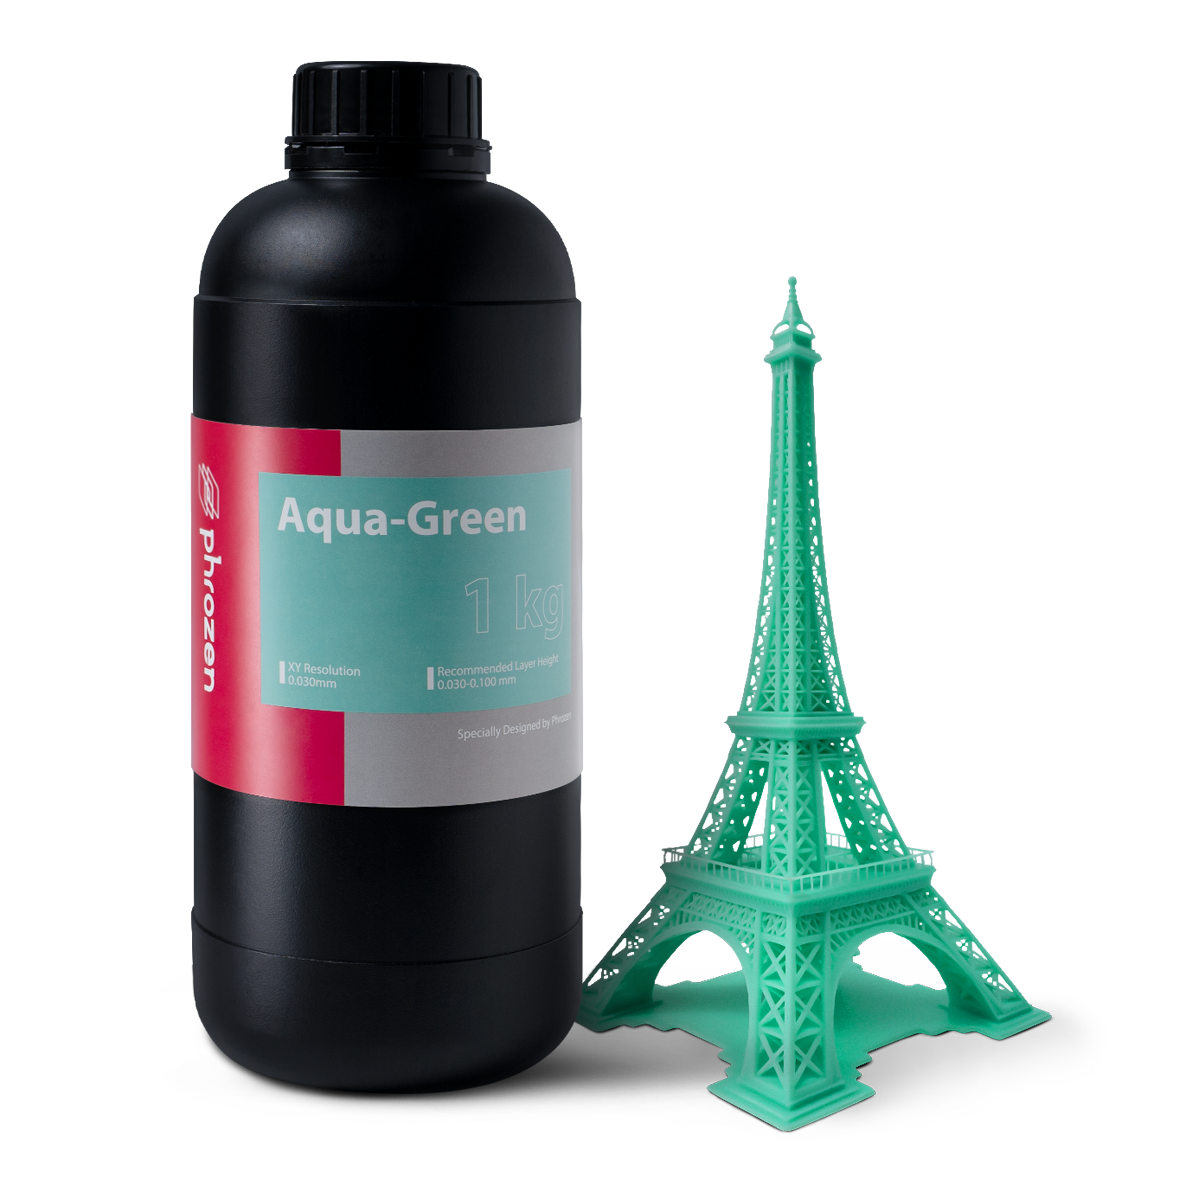 Phrozen Aqua 3D 打印光固化樹脂 – 適合彩色微型模型 – 1000g裝